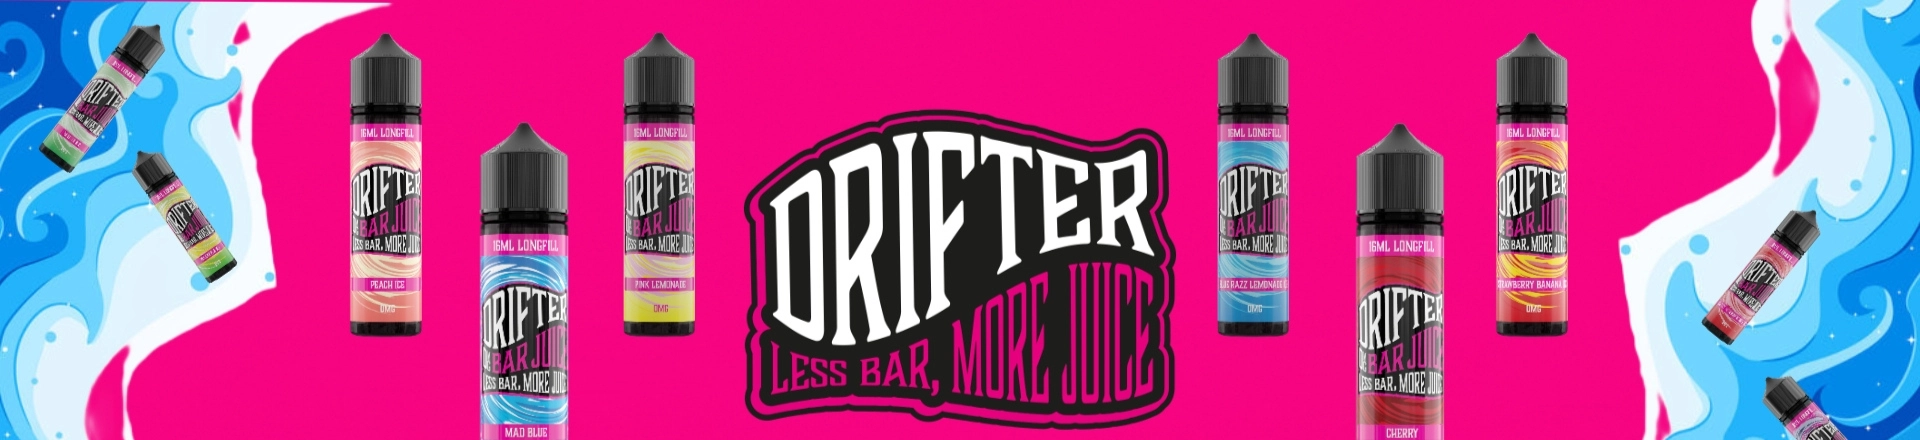 drifter bar banner